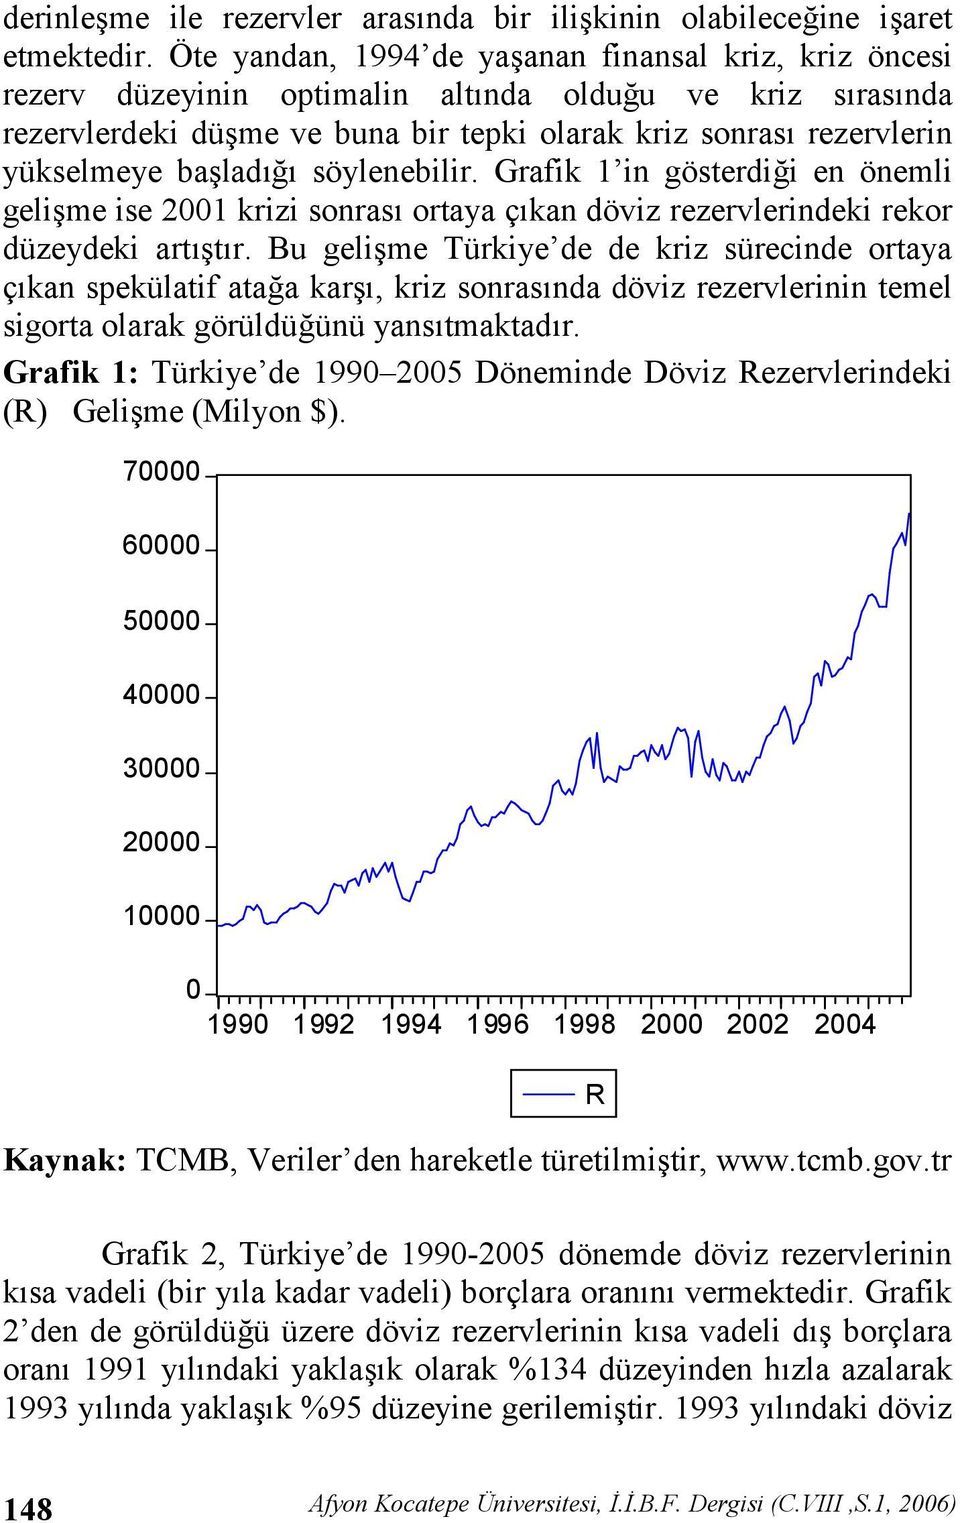 söylenebilir. Grafik 1 in gösterdii en önemli gelime ise 2001 krizi sonras ortaya çkan döviz rezervlerindeki rekor düzeydeki arttr.